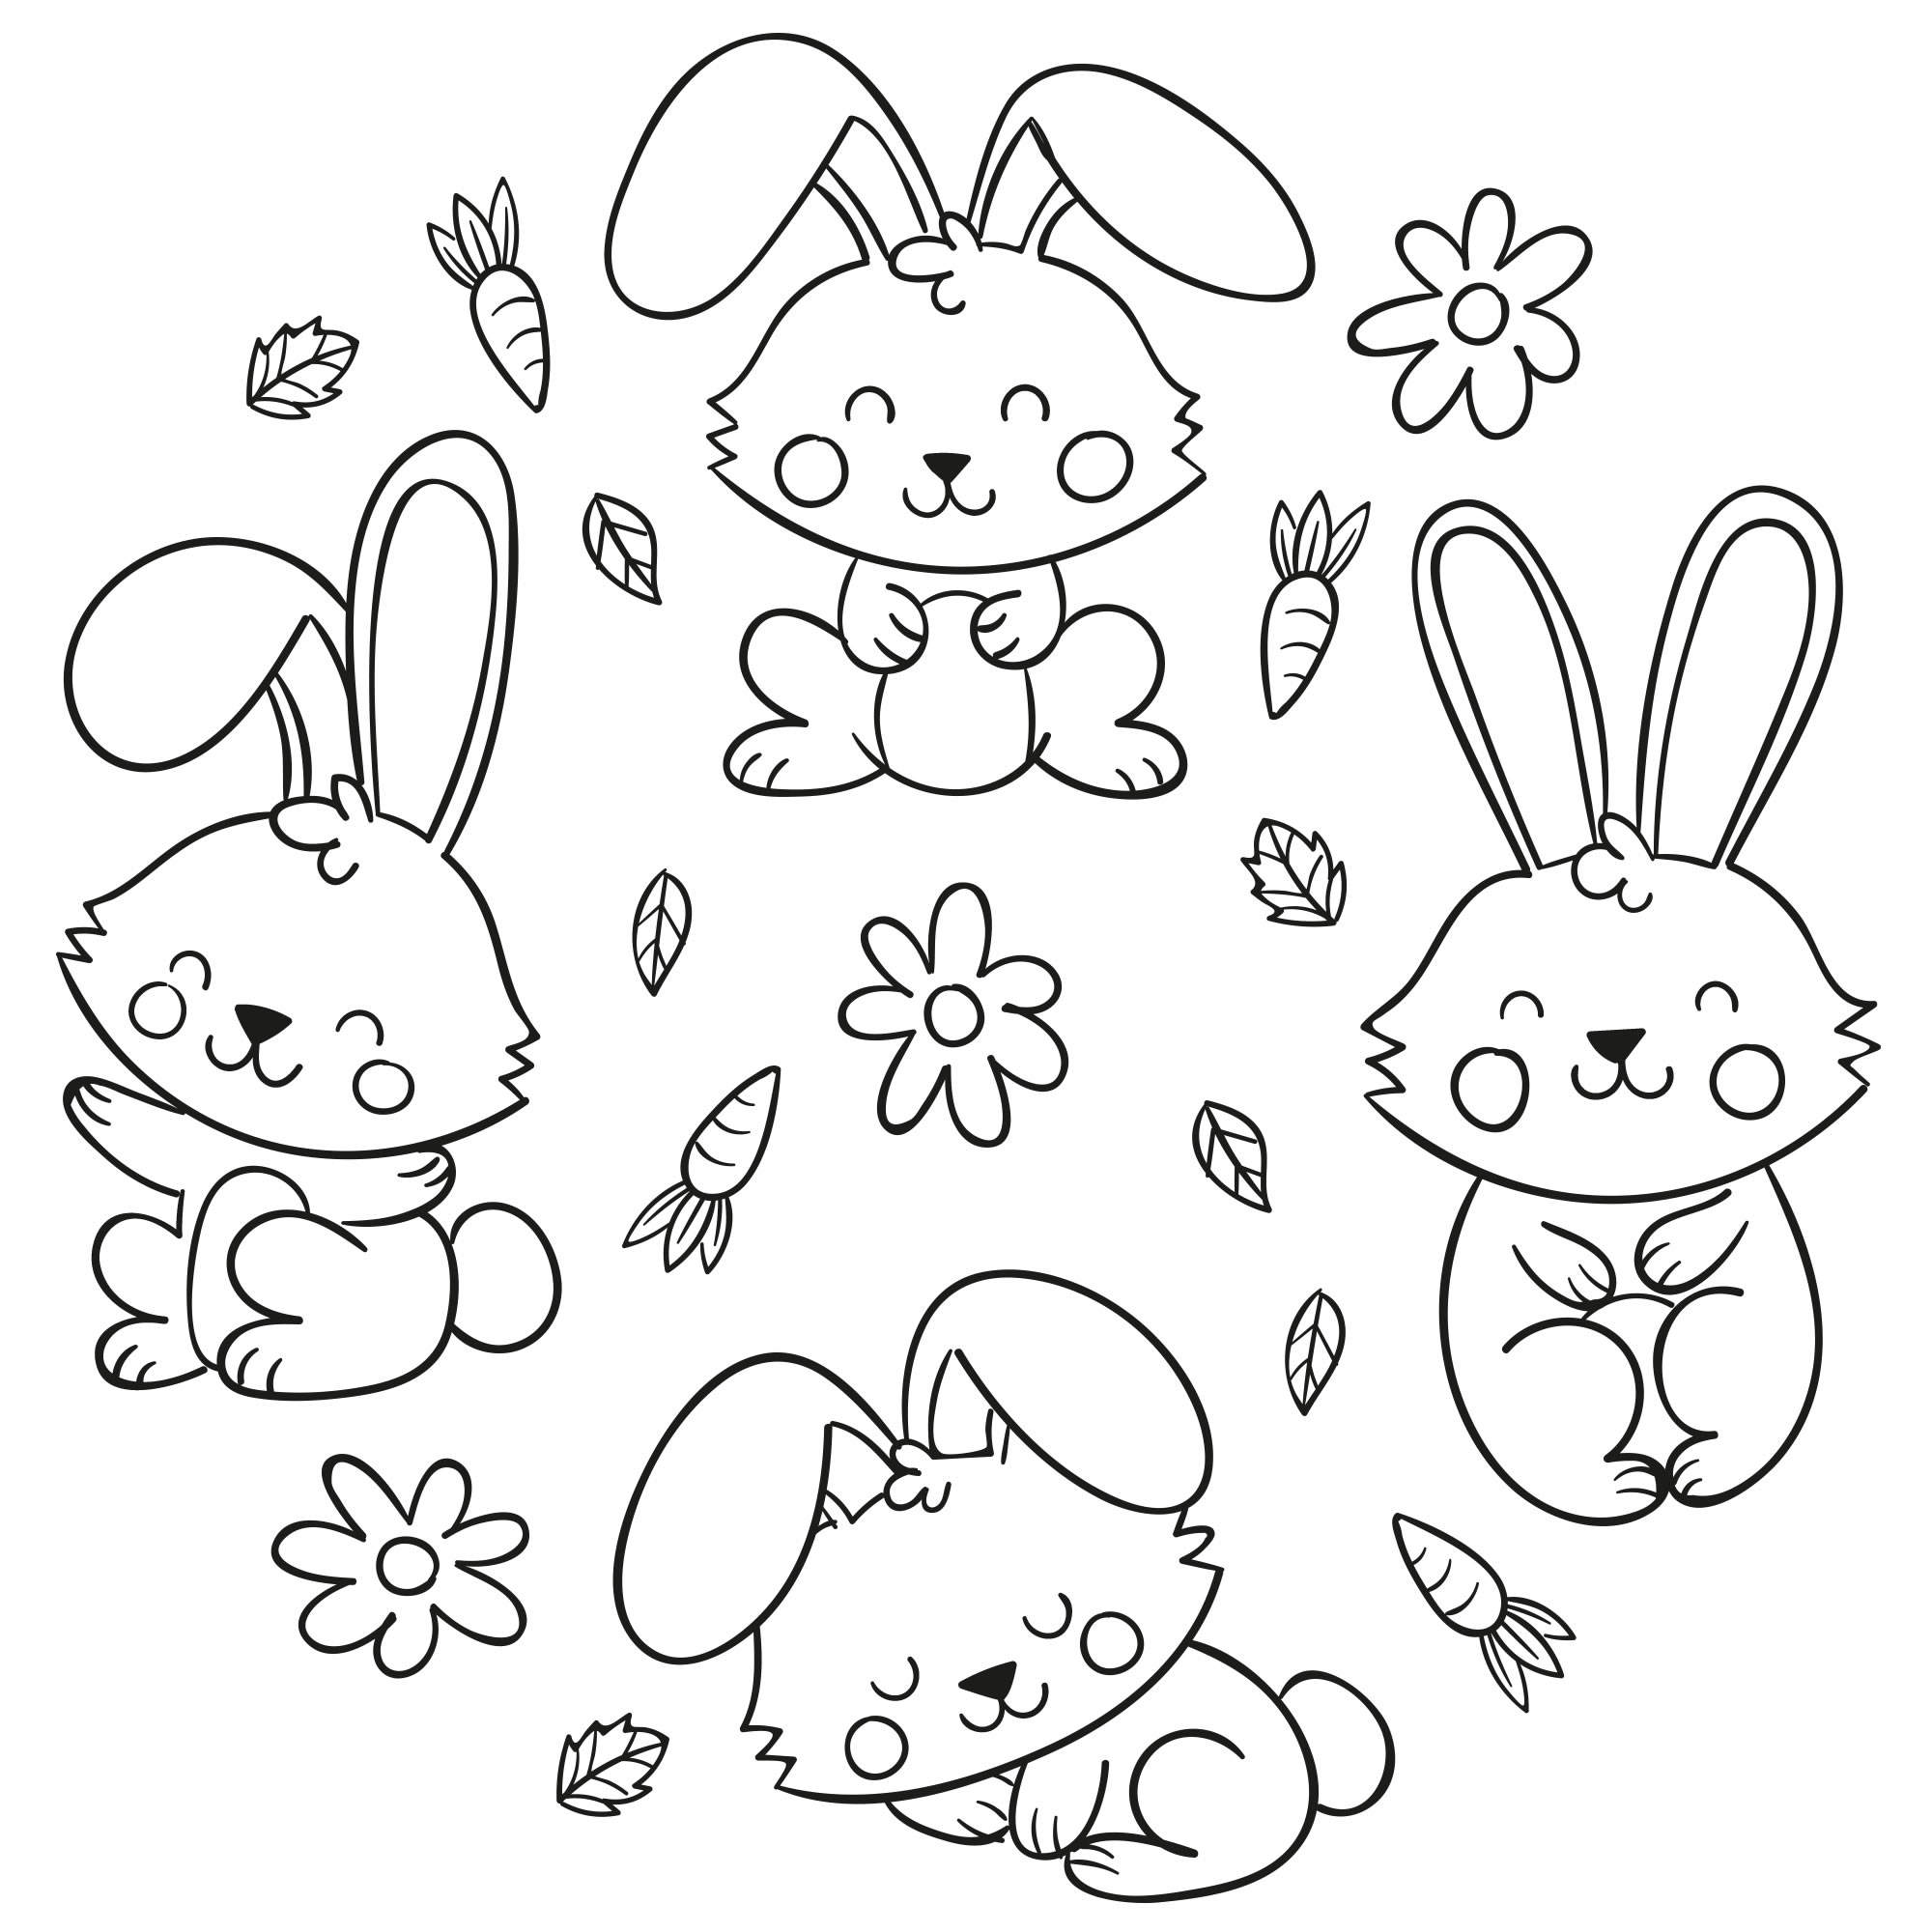 Кролики с морковкой — раскраска для детей. Распечатать бесплатно.